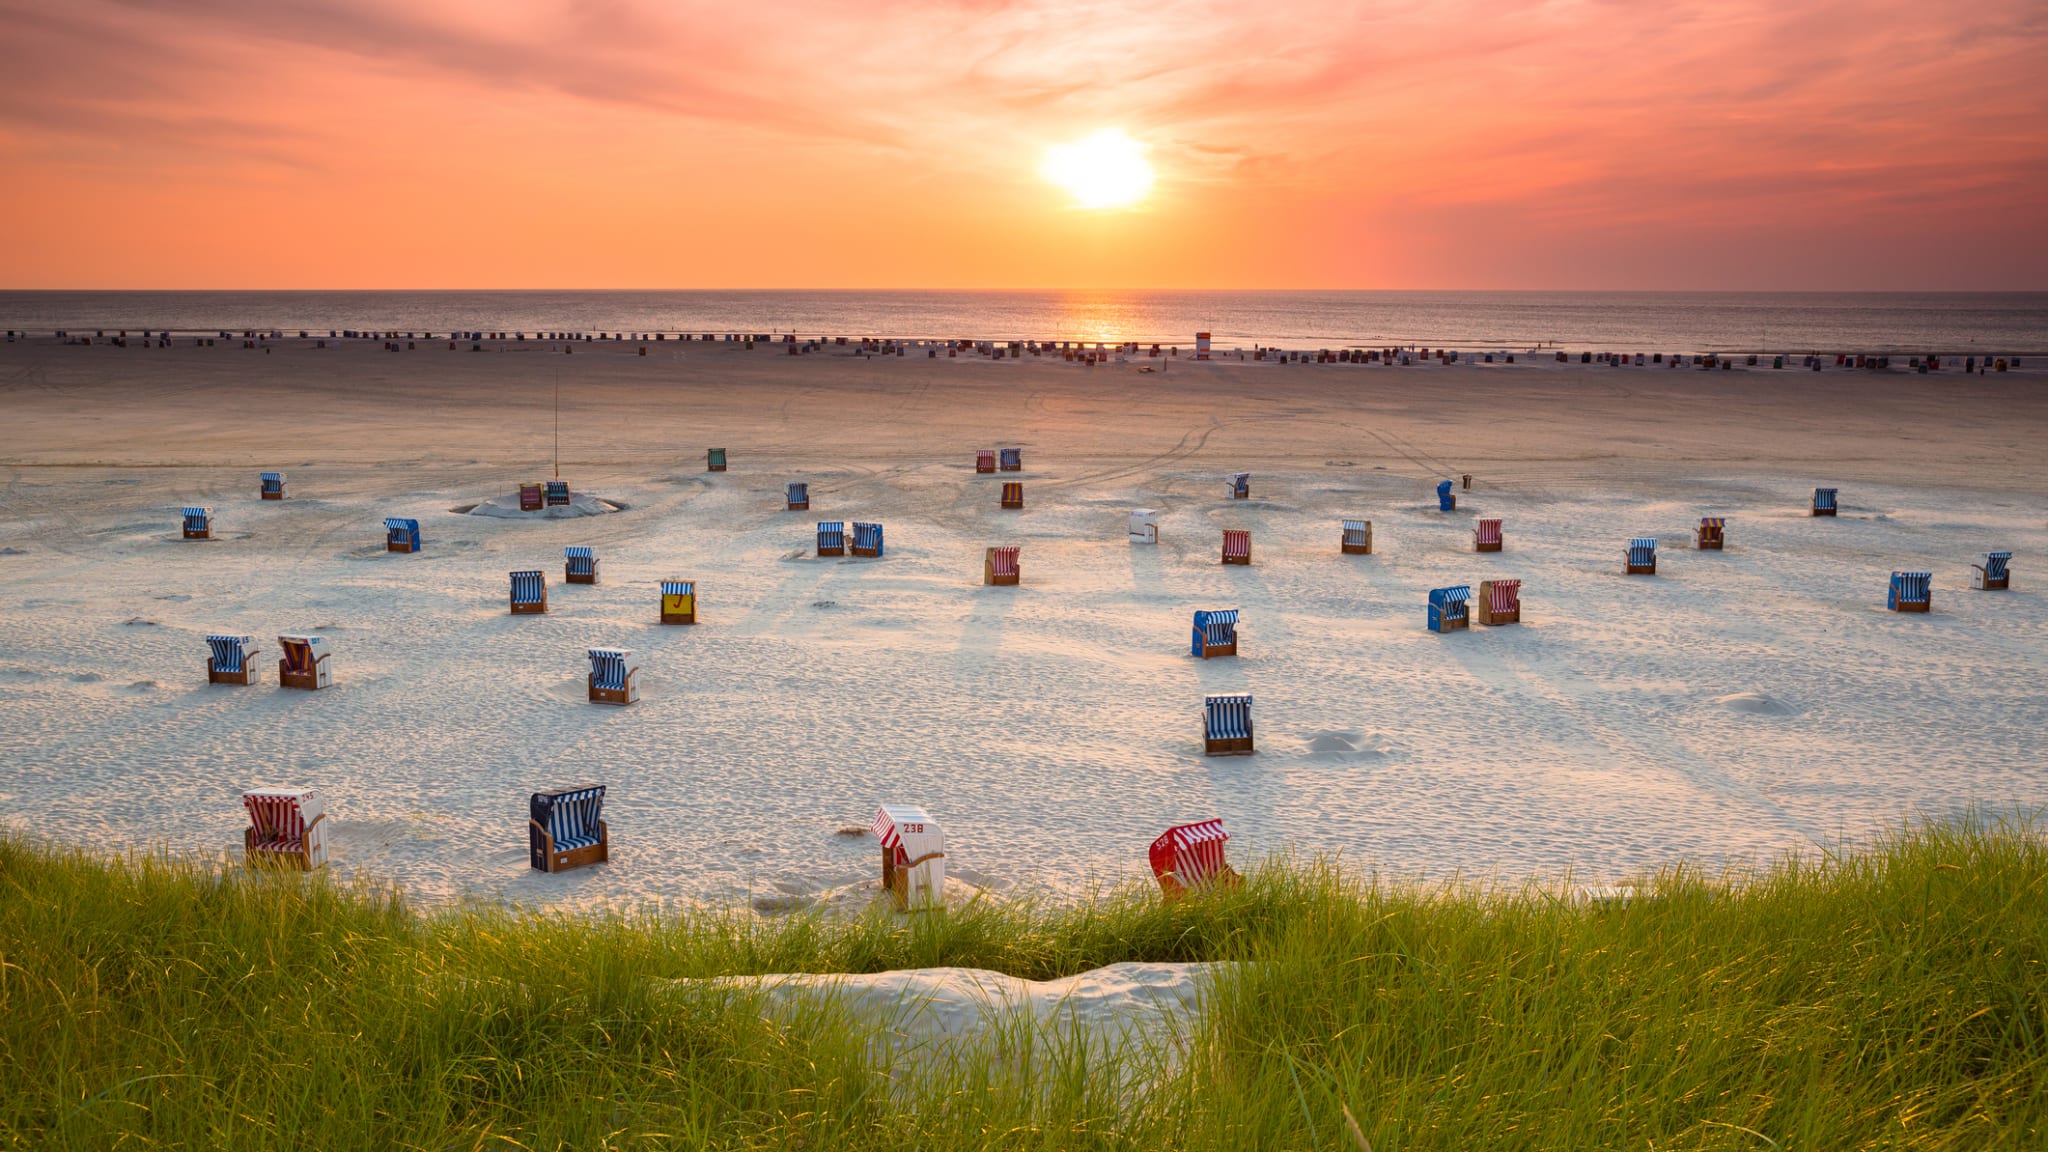 Strandkörbe am Strand von Amrum, Schleswig-Holstein, Deutschland © mh-fotos/E+ via Getty Images